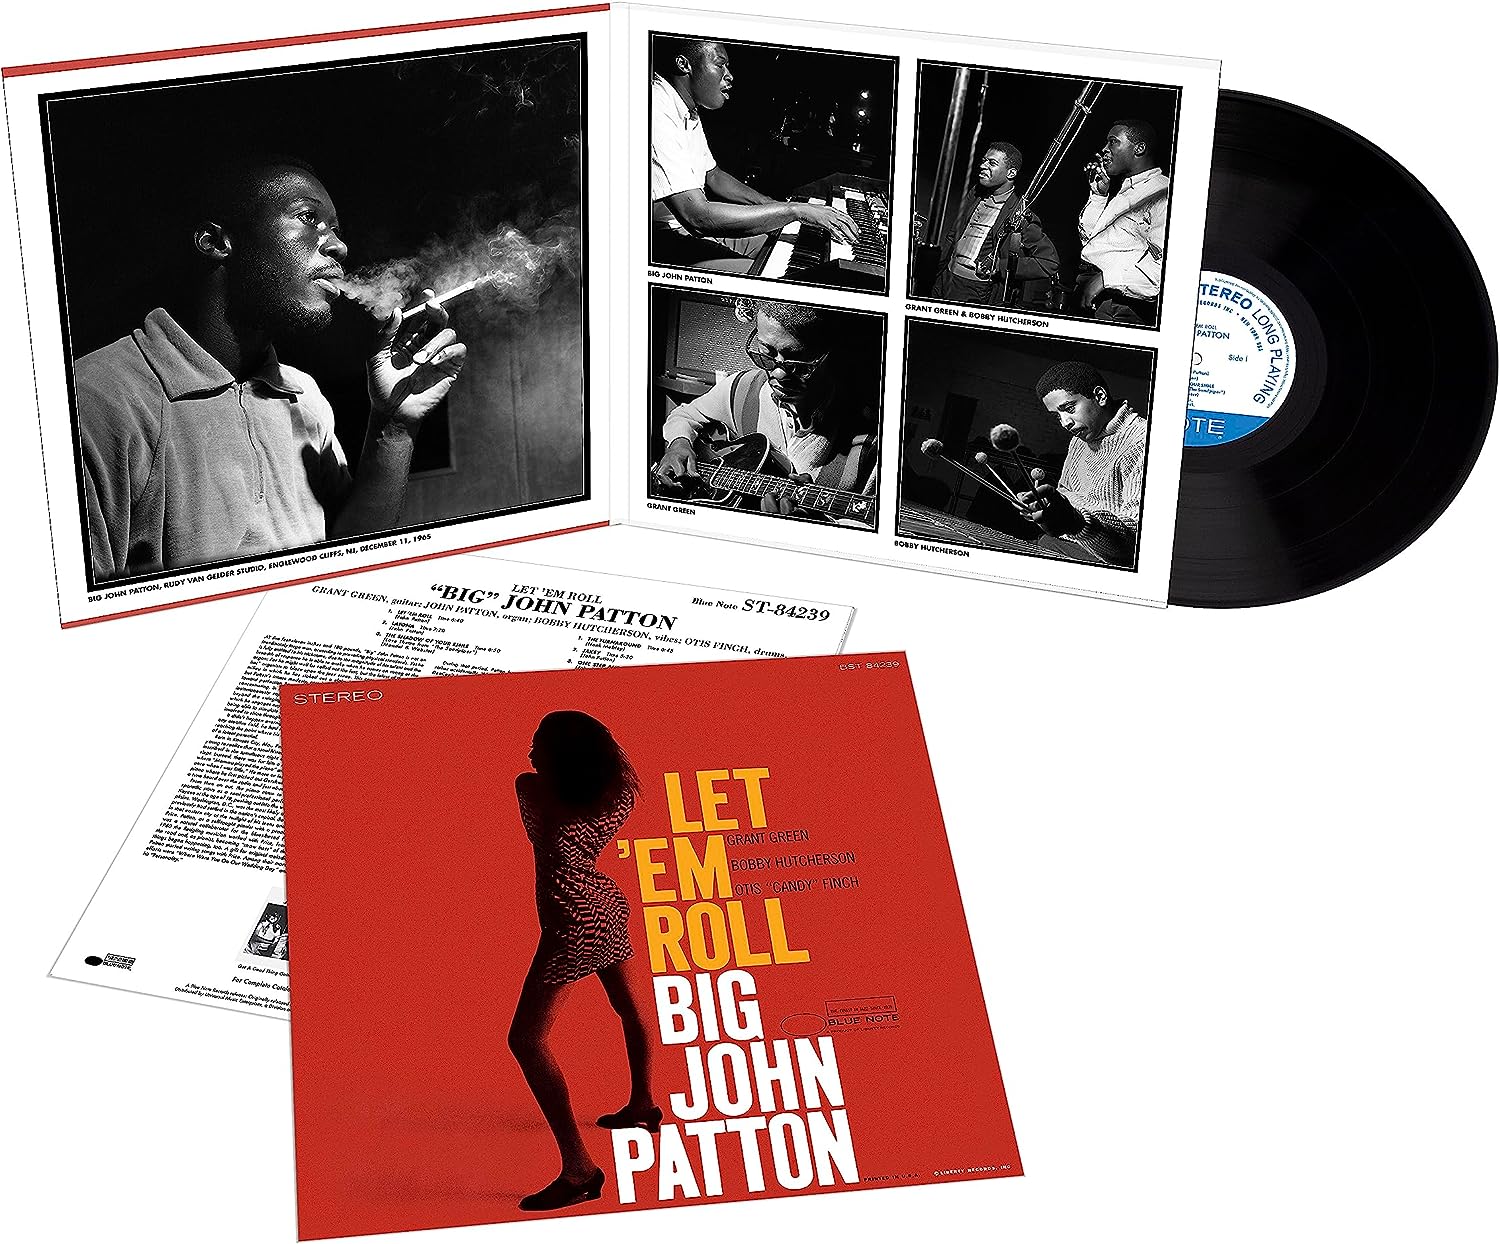 BIG JOHN PATTON - Let 'Em Roll (Blue Note Tone Poet Series) - LP - 180g Vinyl [SEP 22]